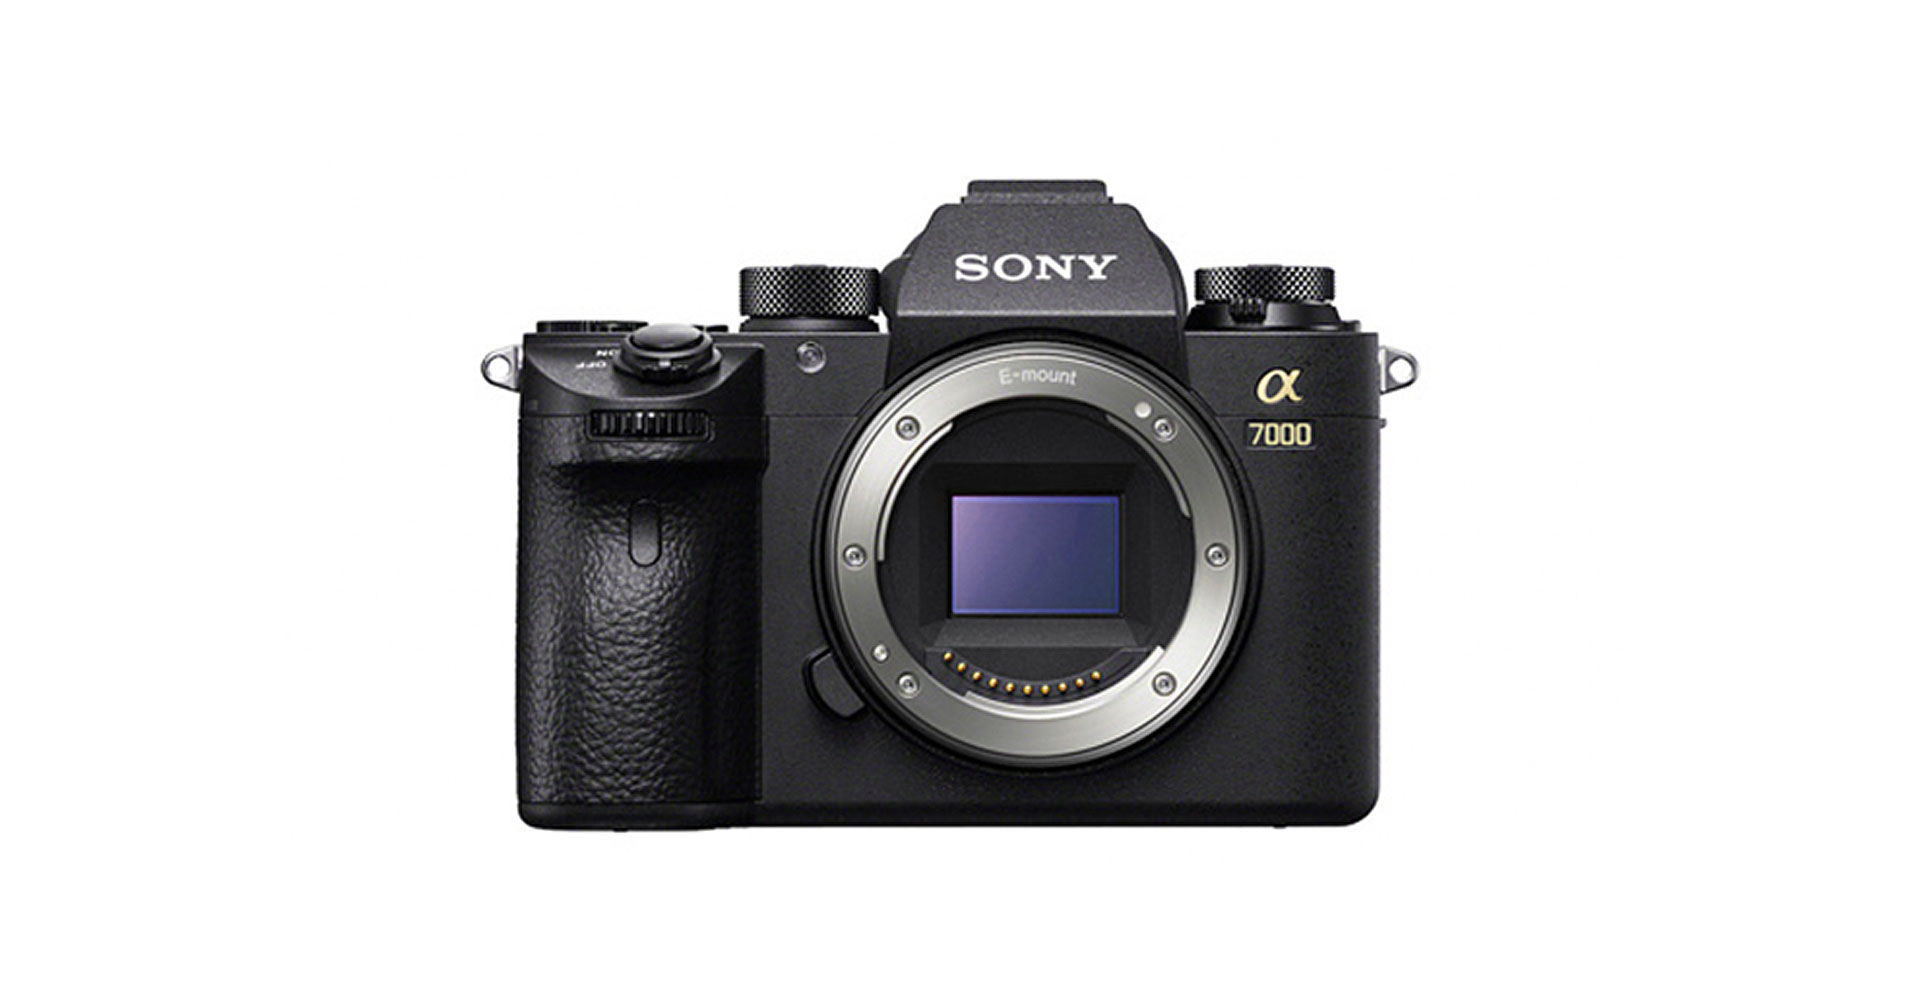 ลือสเปก Sony a7000 กล้อง APS-C ระดับ High-End พร้อมซีรีส์ a6xxx รุ่นใหม่!